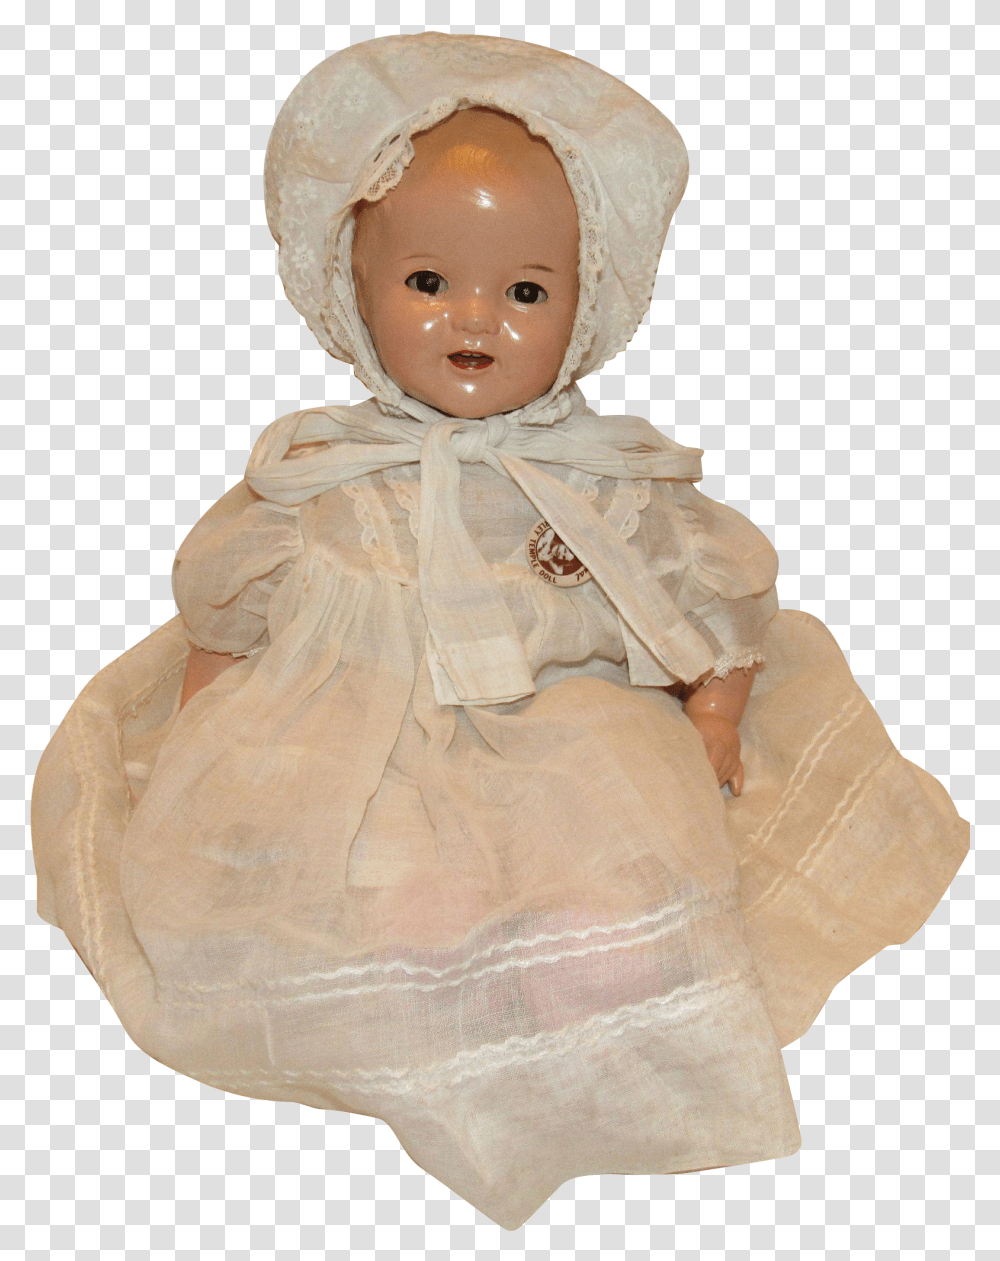 Doll, Apparel, Bonnet, Hat Transparent Png